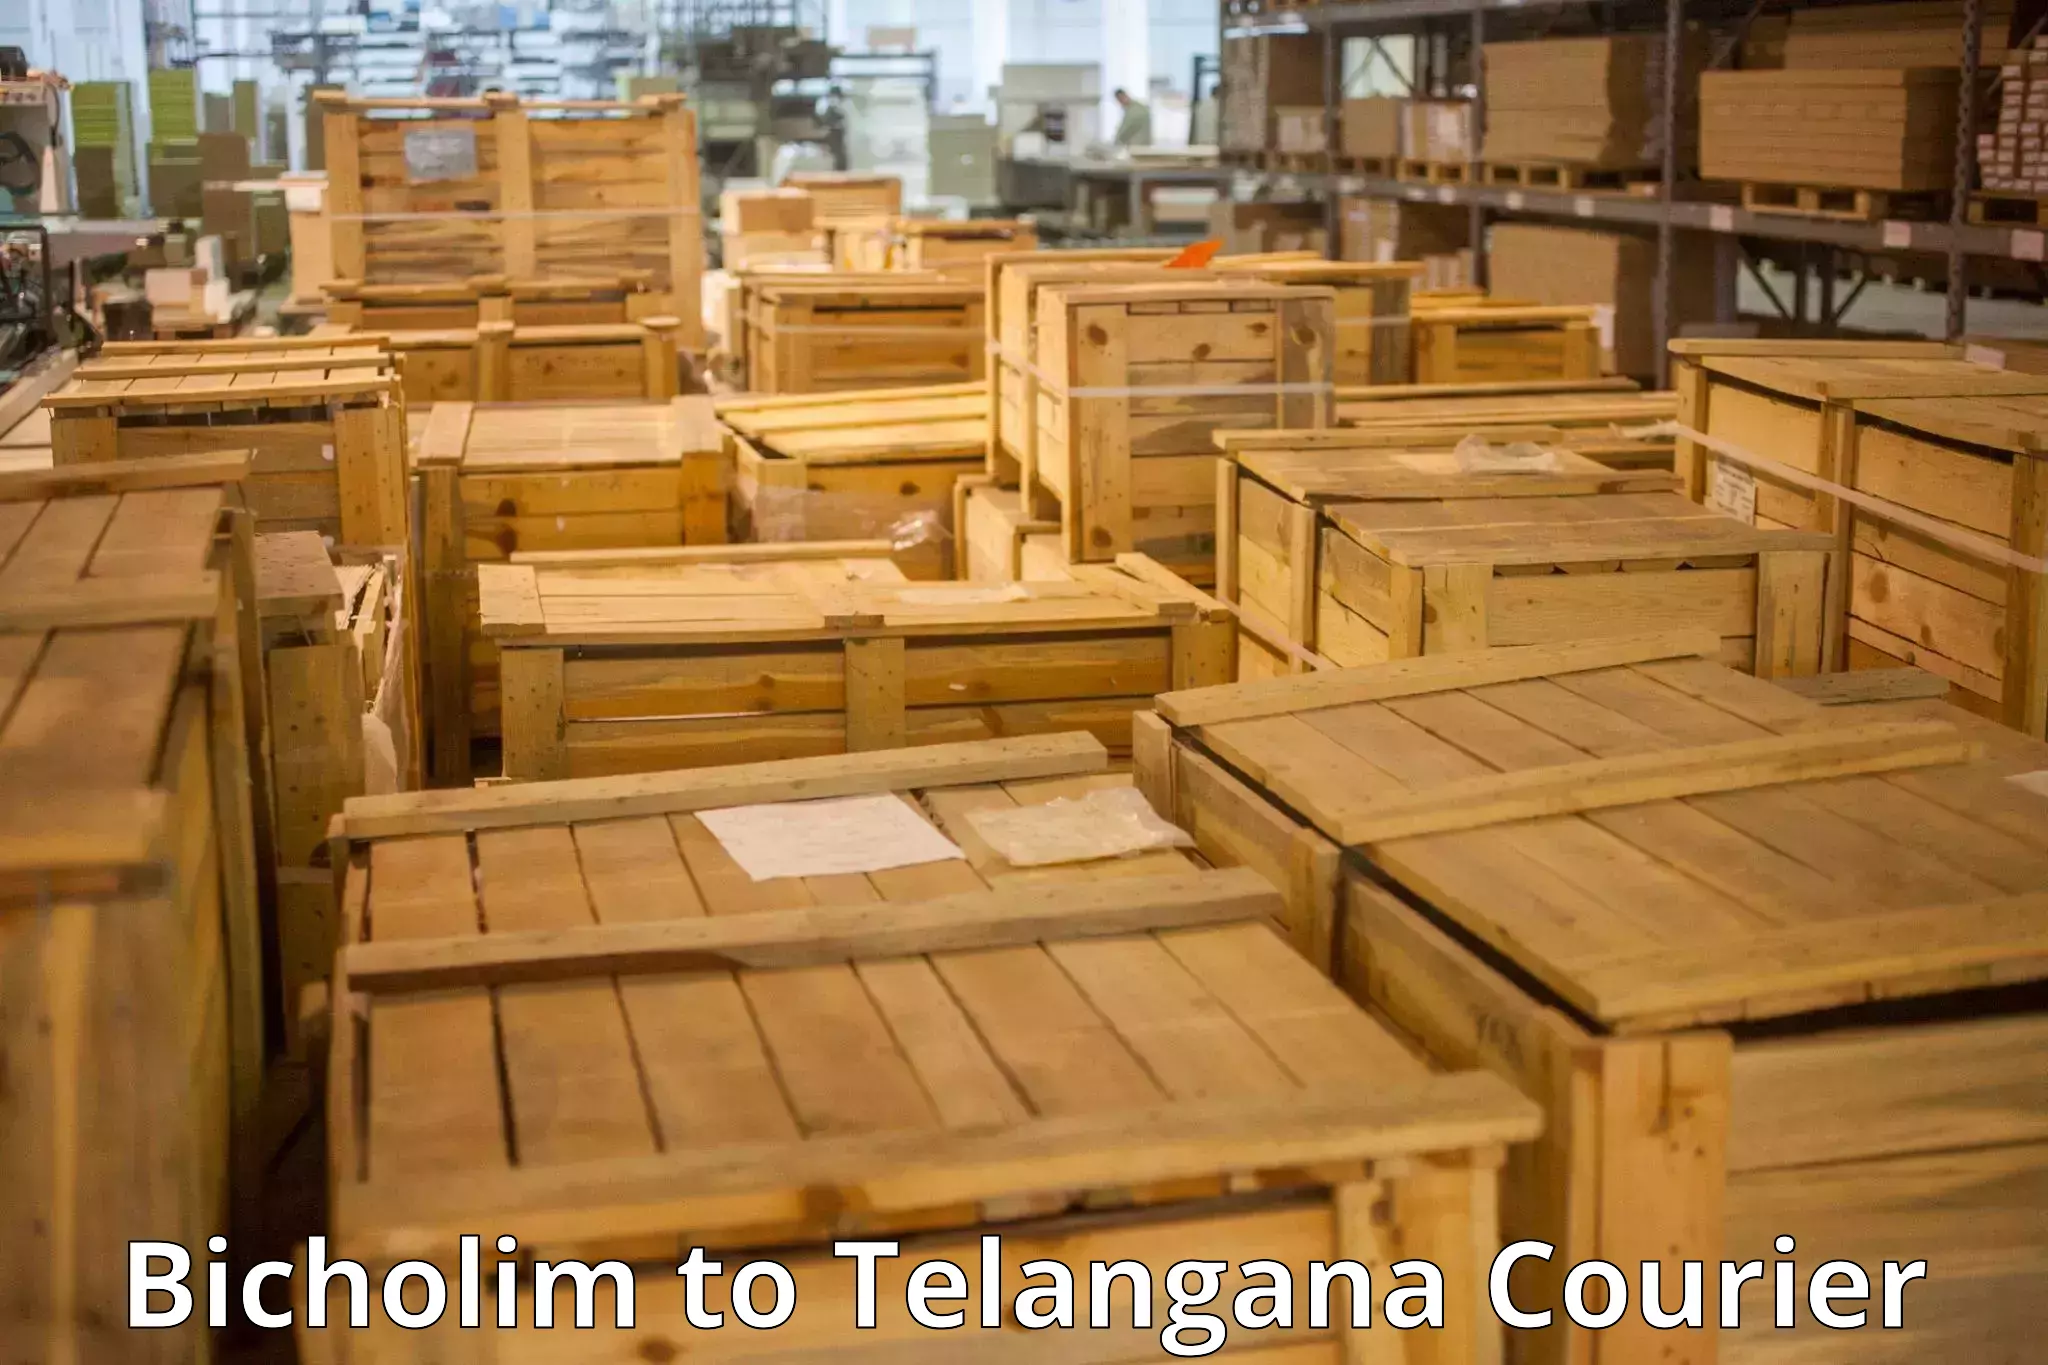 Baggage transport services in Bicholim to Telangana